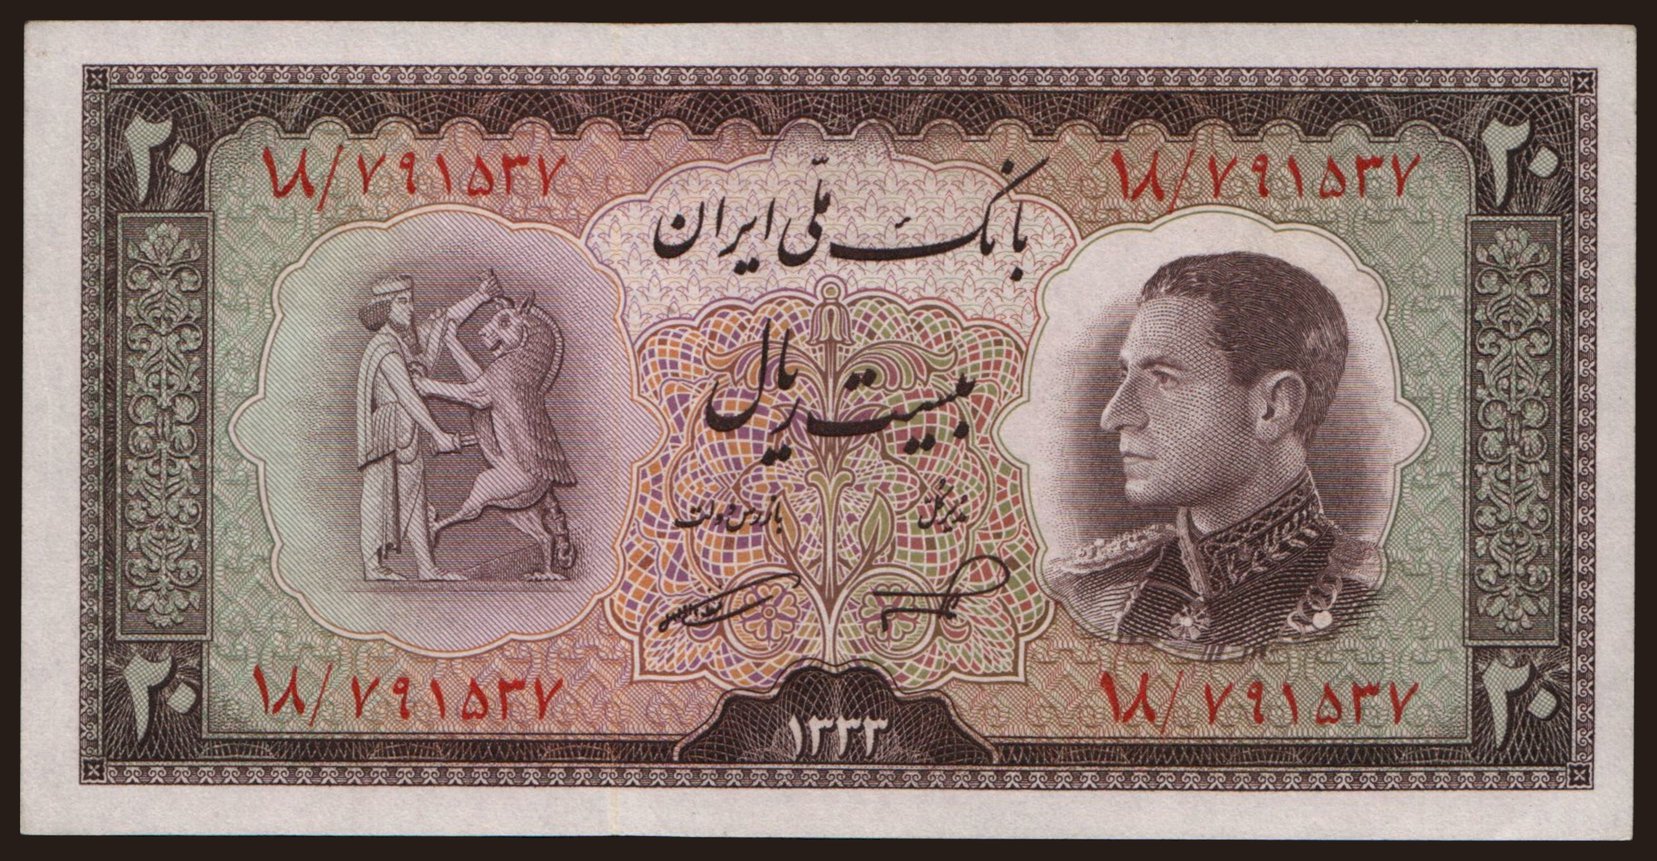 20 rials, 1954